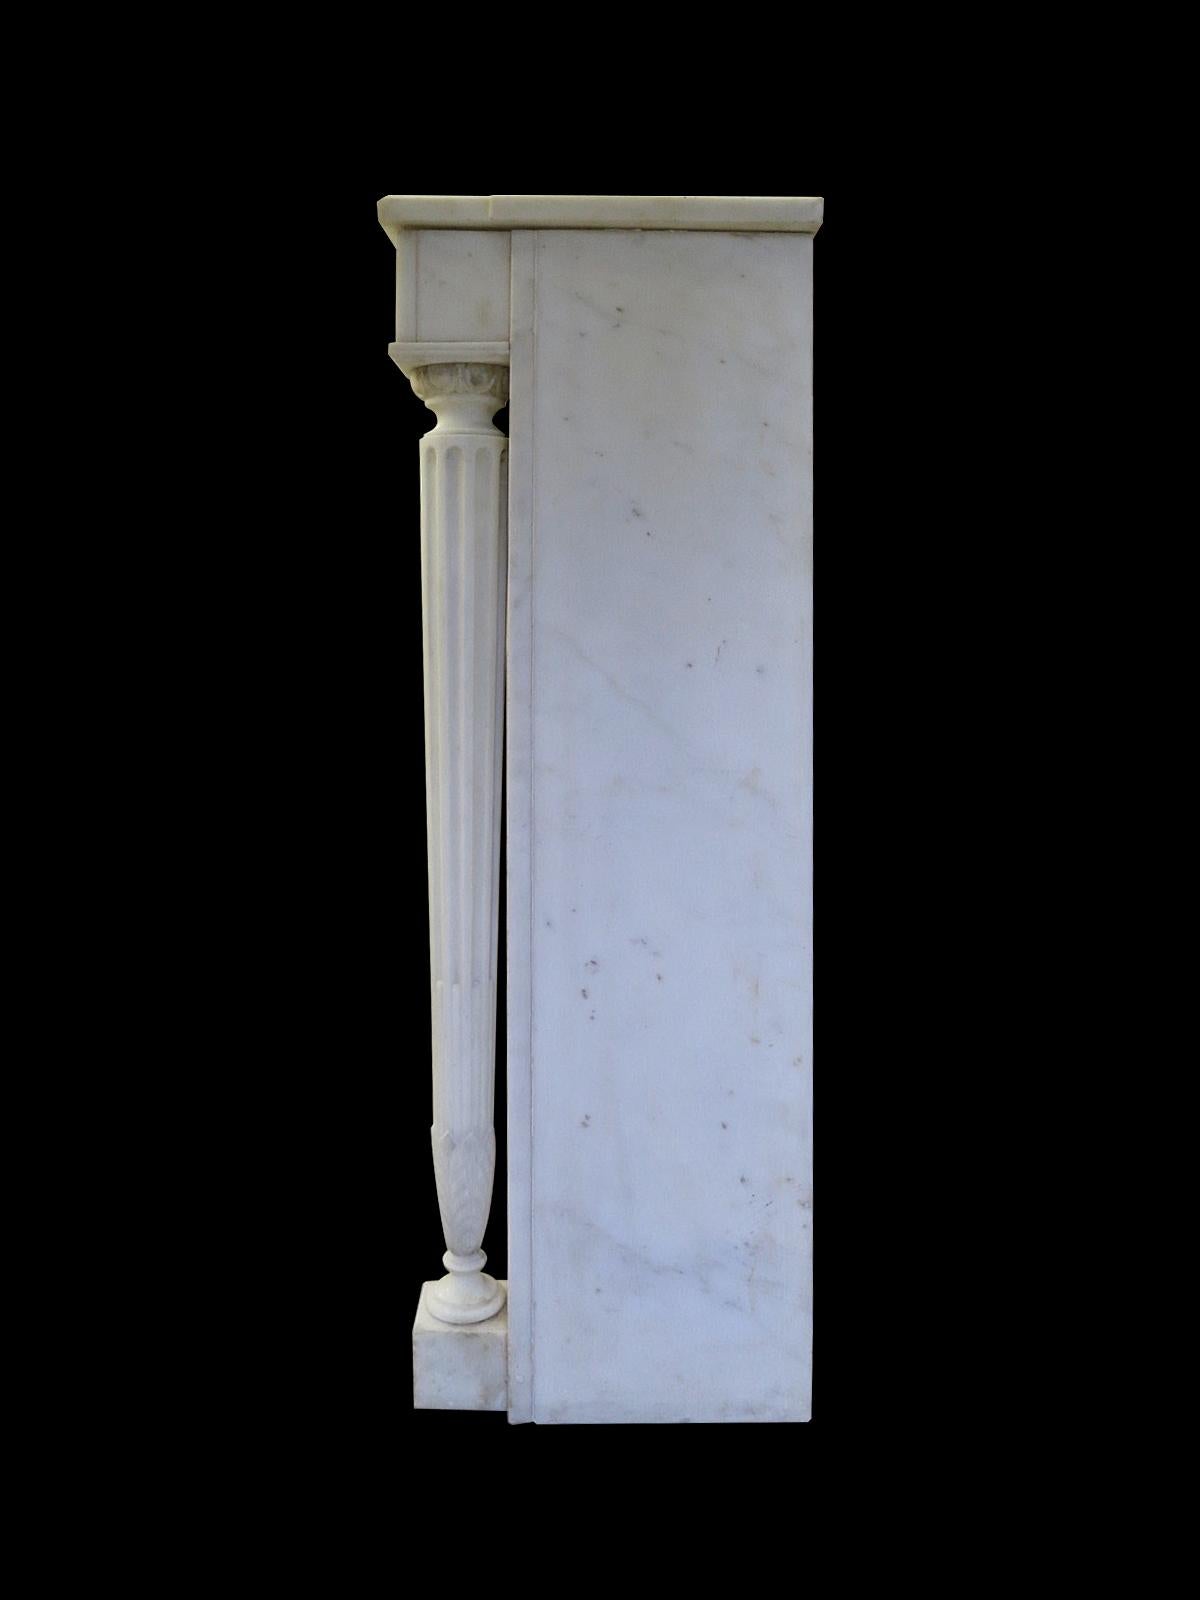 Cheminée de style Louis XVI de la fin du XIXe siècle en marbre blanc, avec des colonnes débrayées délicatement effilées et cannelées terminées par une feuille d'acanthe, et coiffées d'un œuf et d'une fléchette. Les colonnes soutiennent une frise de